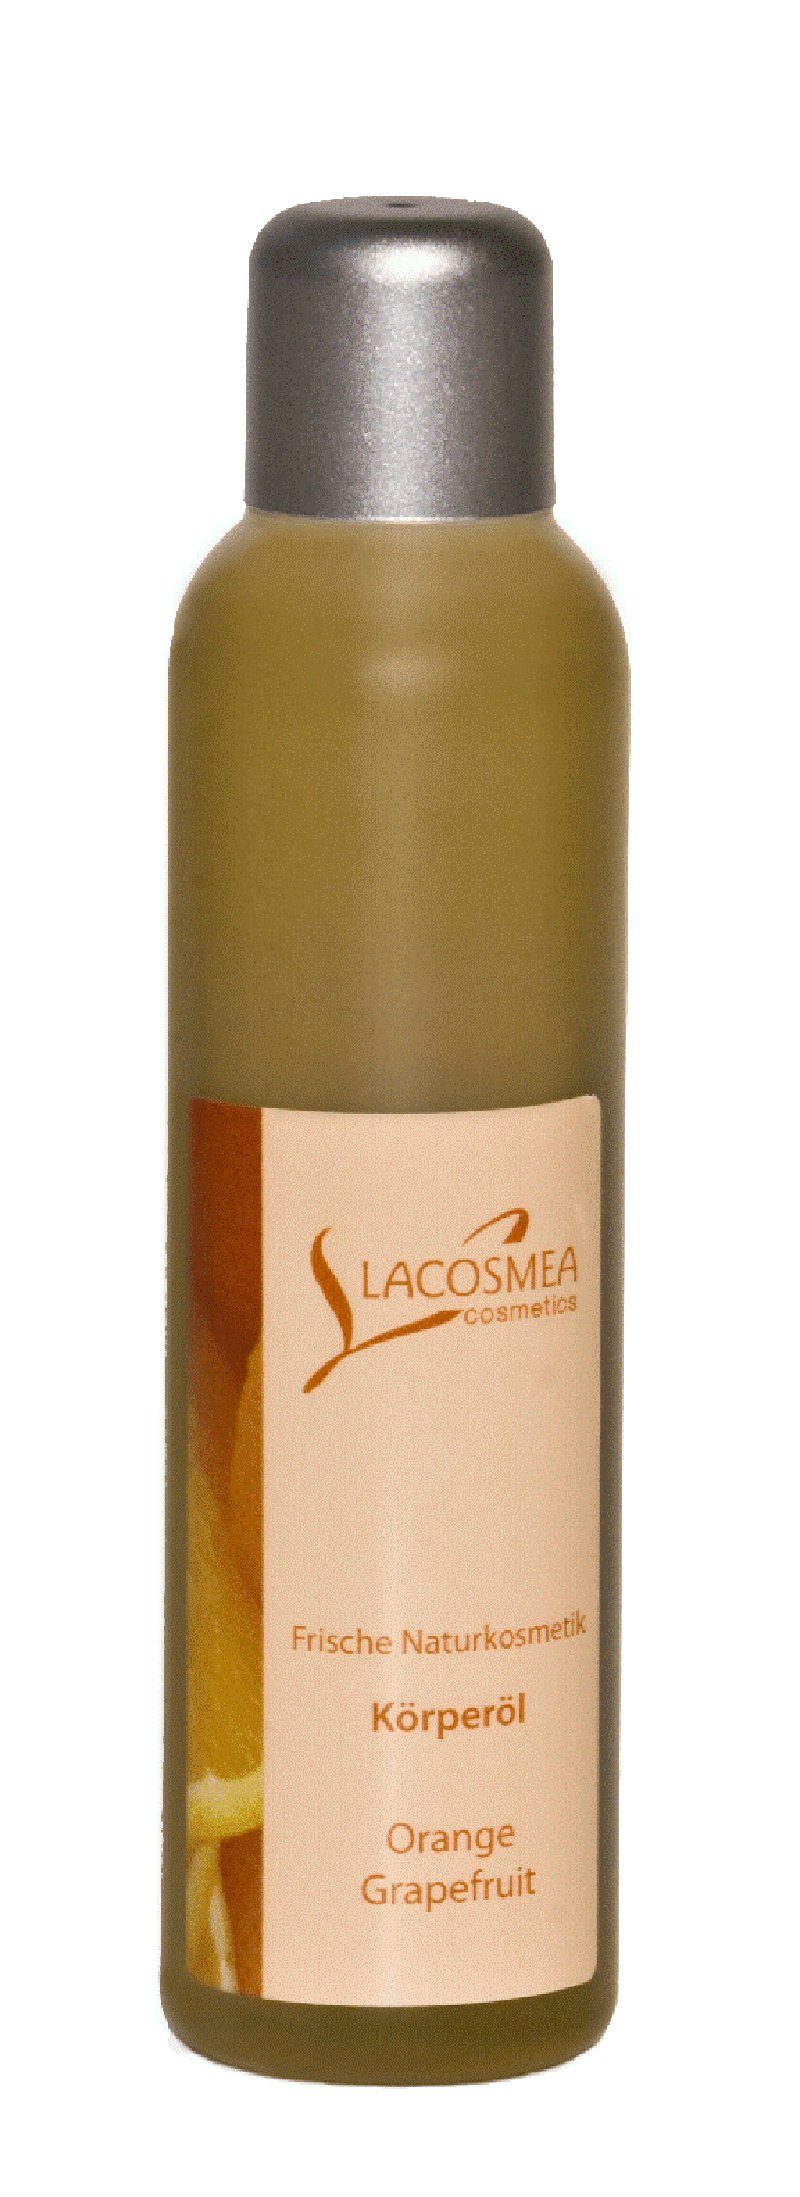 Lacosmea Cosmetics Körperöl Körperöl Orange/Grapefruit | Körperöle